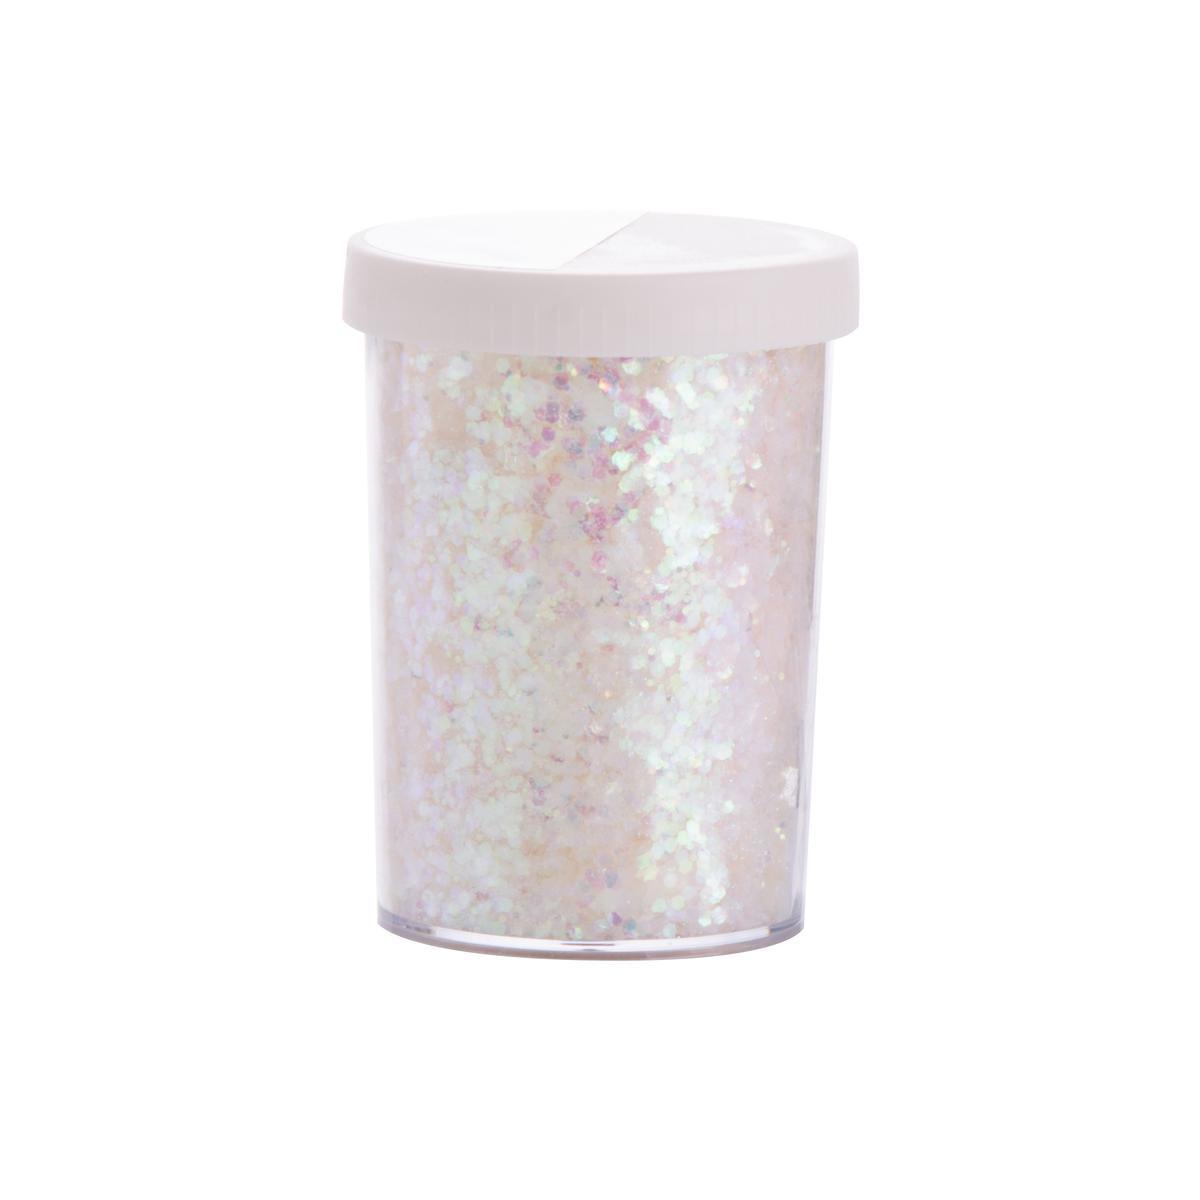 Pot de paillettes iridescentes - 100 g - 6.5 x 5.5 x H 8.5 cm - Blanc